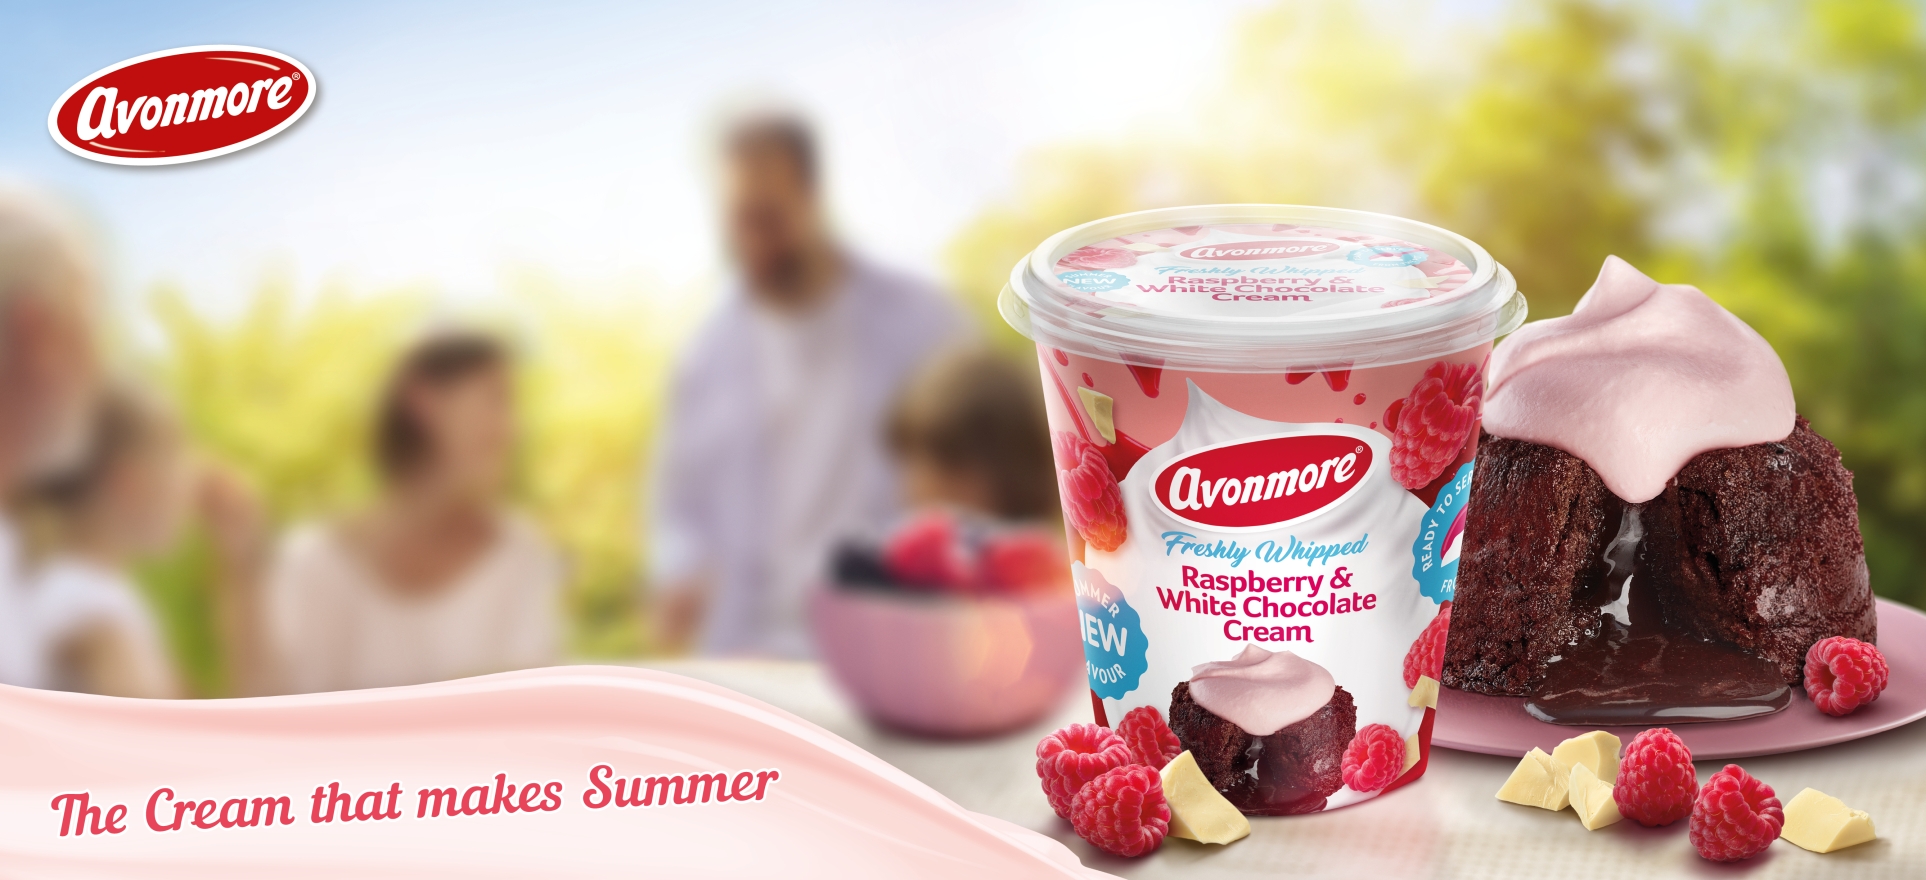 Avonmore Raspberry & white chocolate cream. The cream that makes Summer.